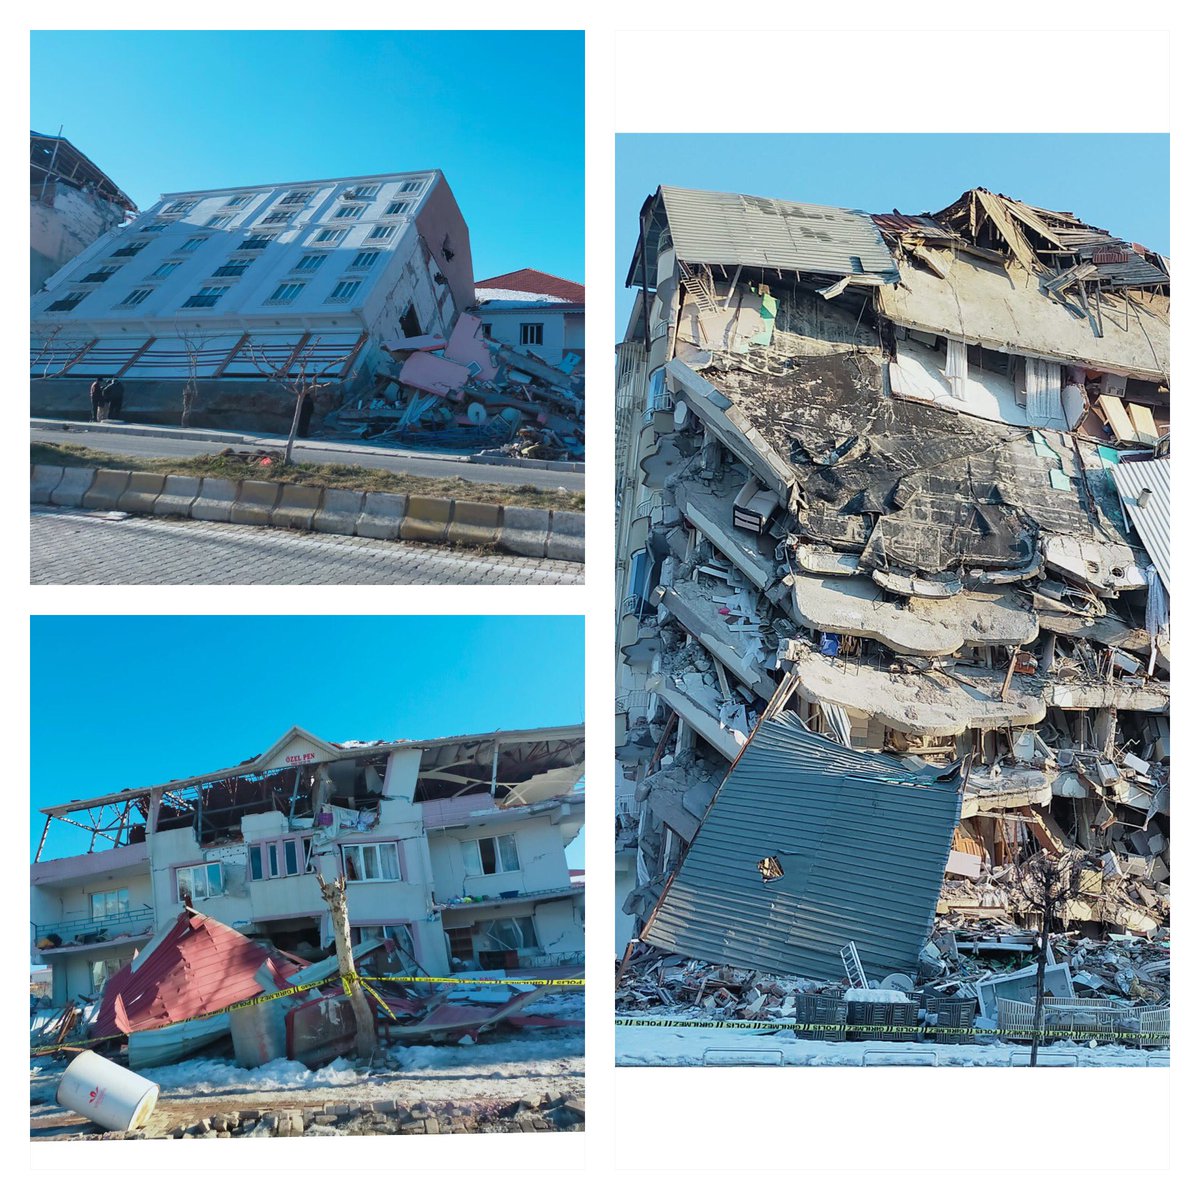 📌 6 Şubat Pazarcık ve Elbistan depremleri sonrası AFAD Deprem Dairesi Saha Gözlemlerine devam ediyor

📌 Malatya, Kahramanmaraş ve Adıyaman’da deprem sonrası binalarda gözlenen hasarlar.

#pazarcıkdeprem #deprem
#Elbistandeprem